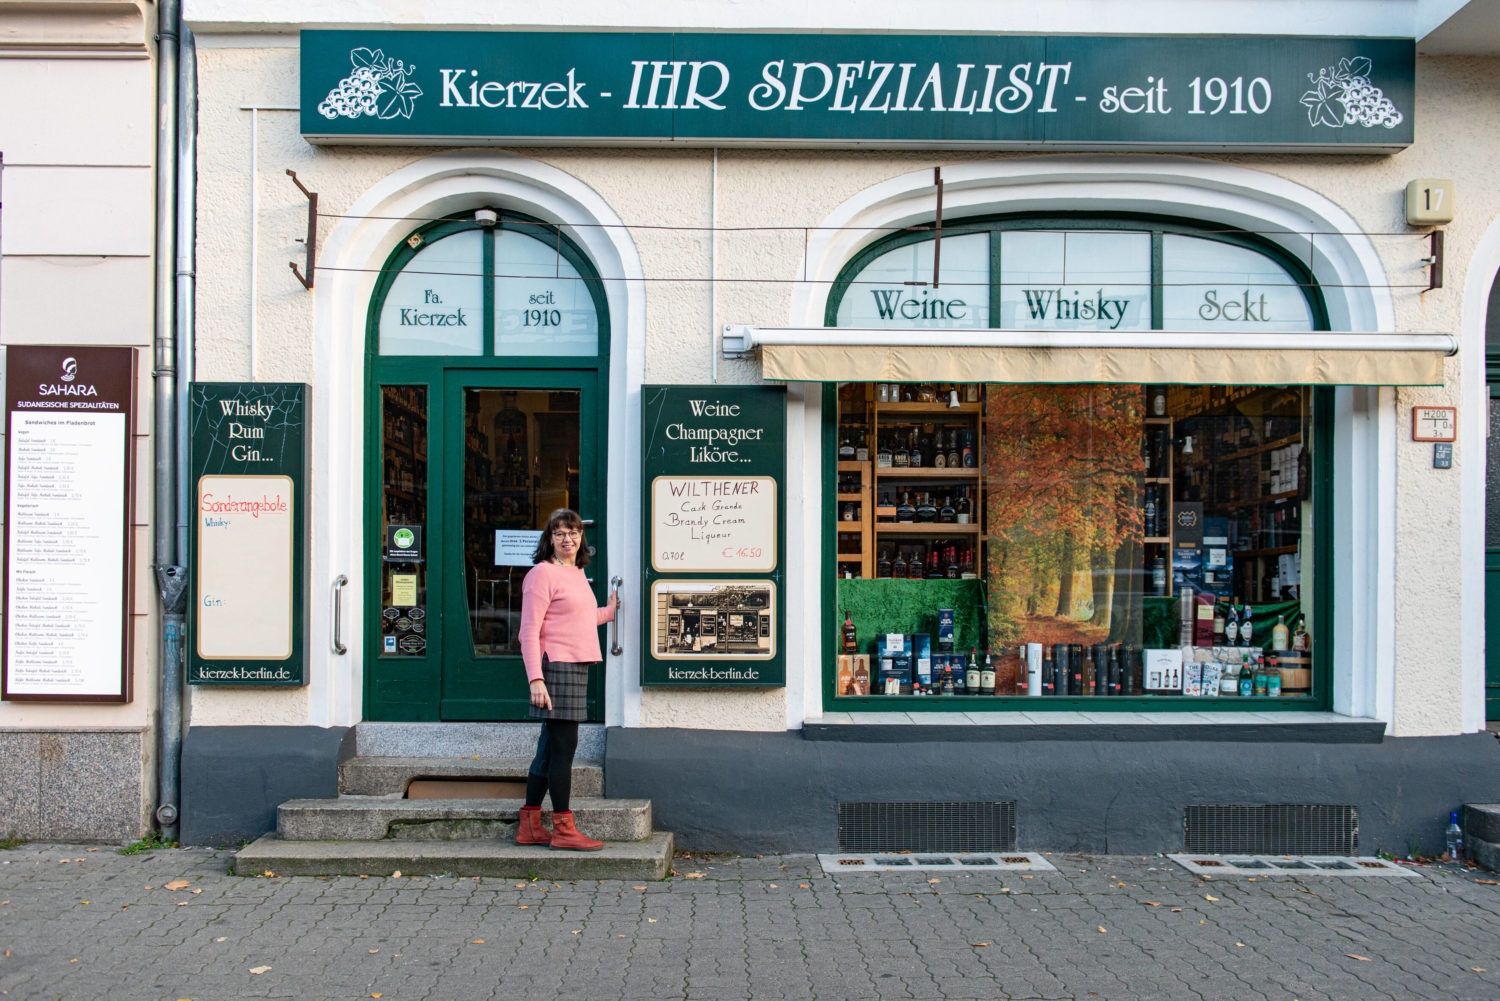  Das Fachgeschäft Kierzek Weine-Spirituosen befindet sich seit 1920 in der Weitlingstraße in Lichtenberg. Foto: Anthea Schaap